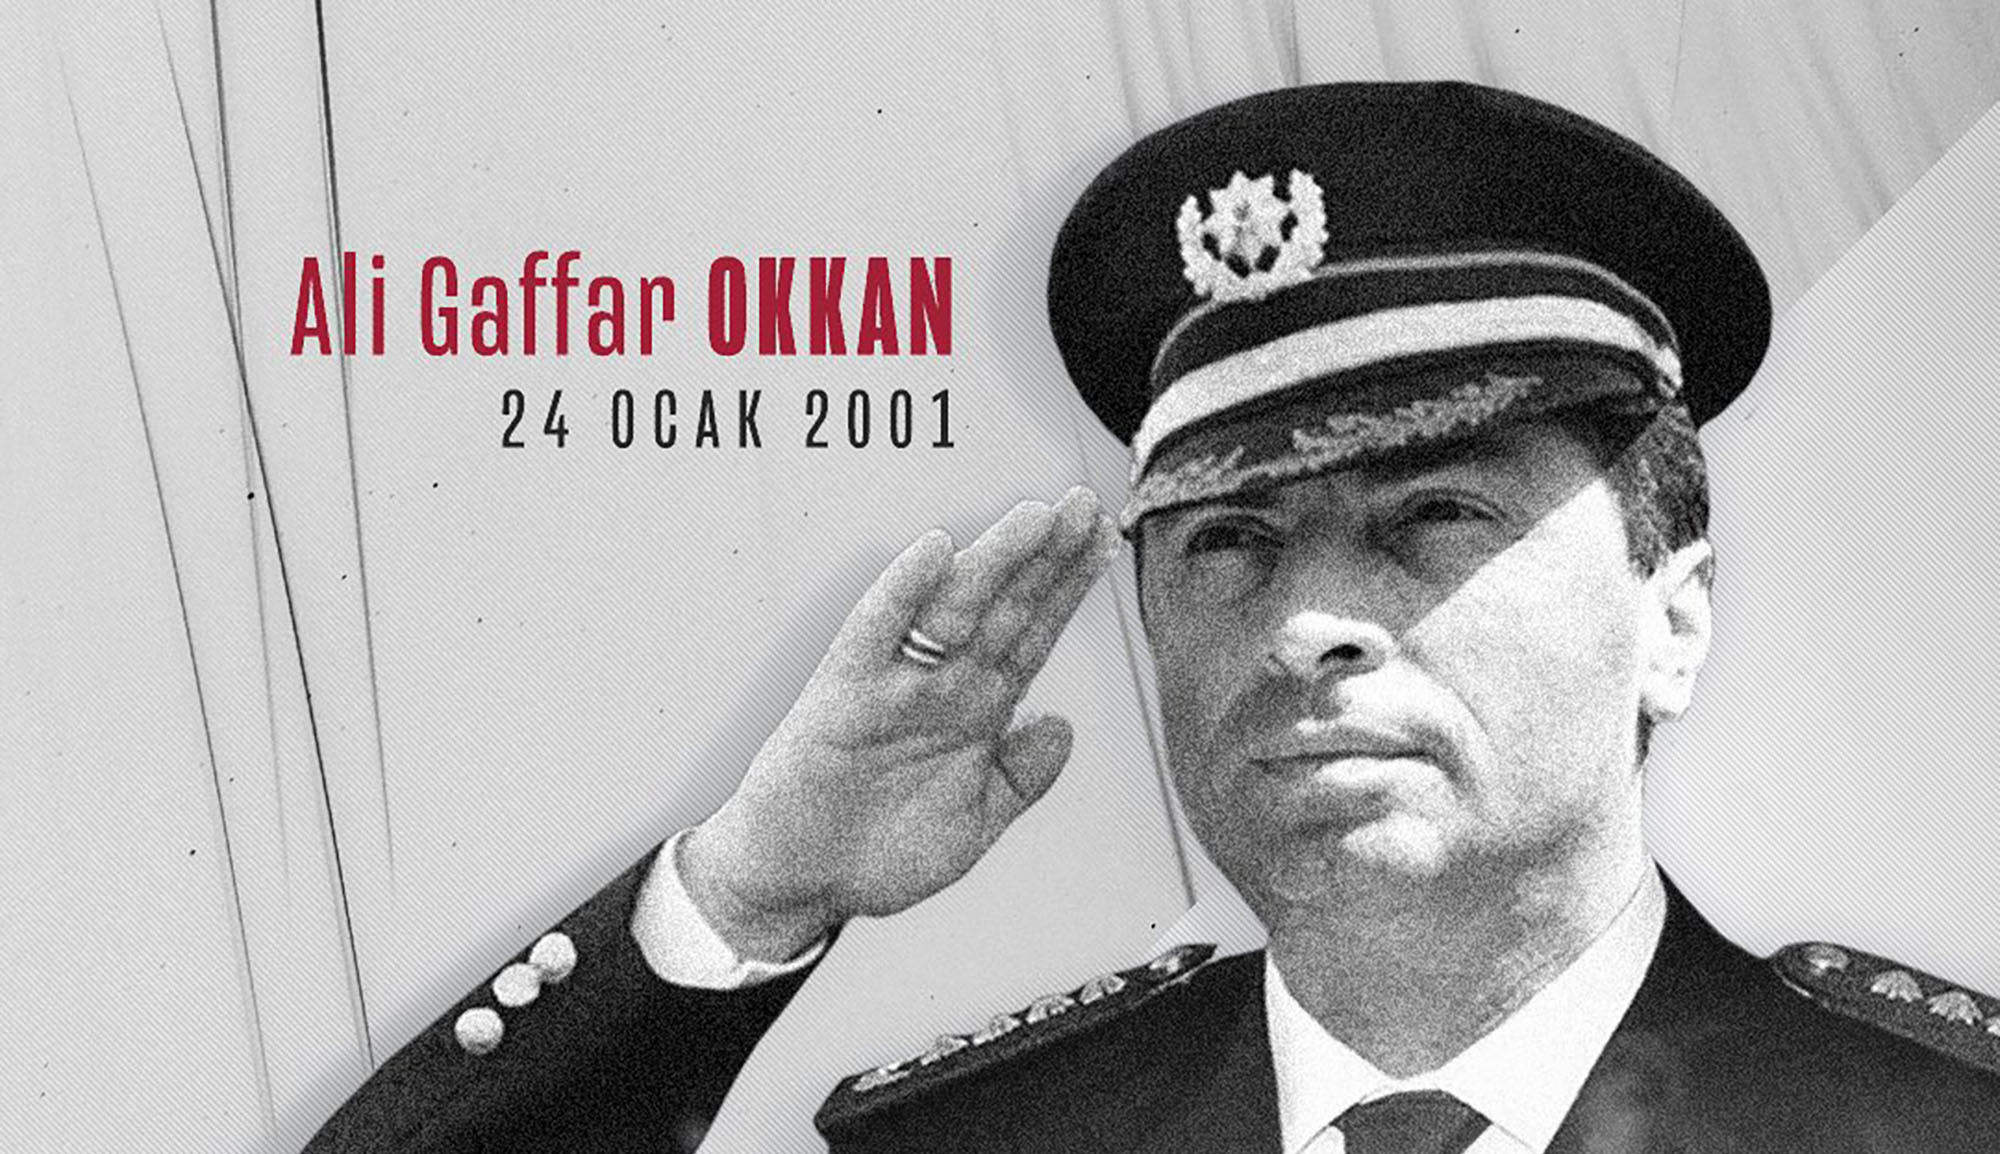 22 yıl önce hain bir saldırı sonucu Şehit olan kahraman Emniyet Müdürümüz Gaffar Okkan’ı rahmet ve minnetle anıyoruz